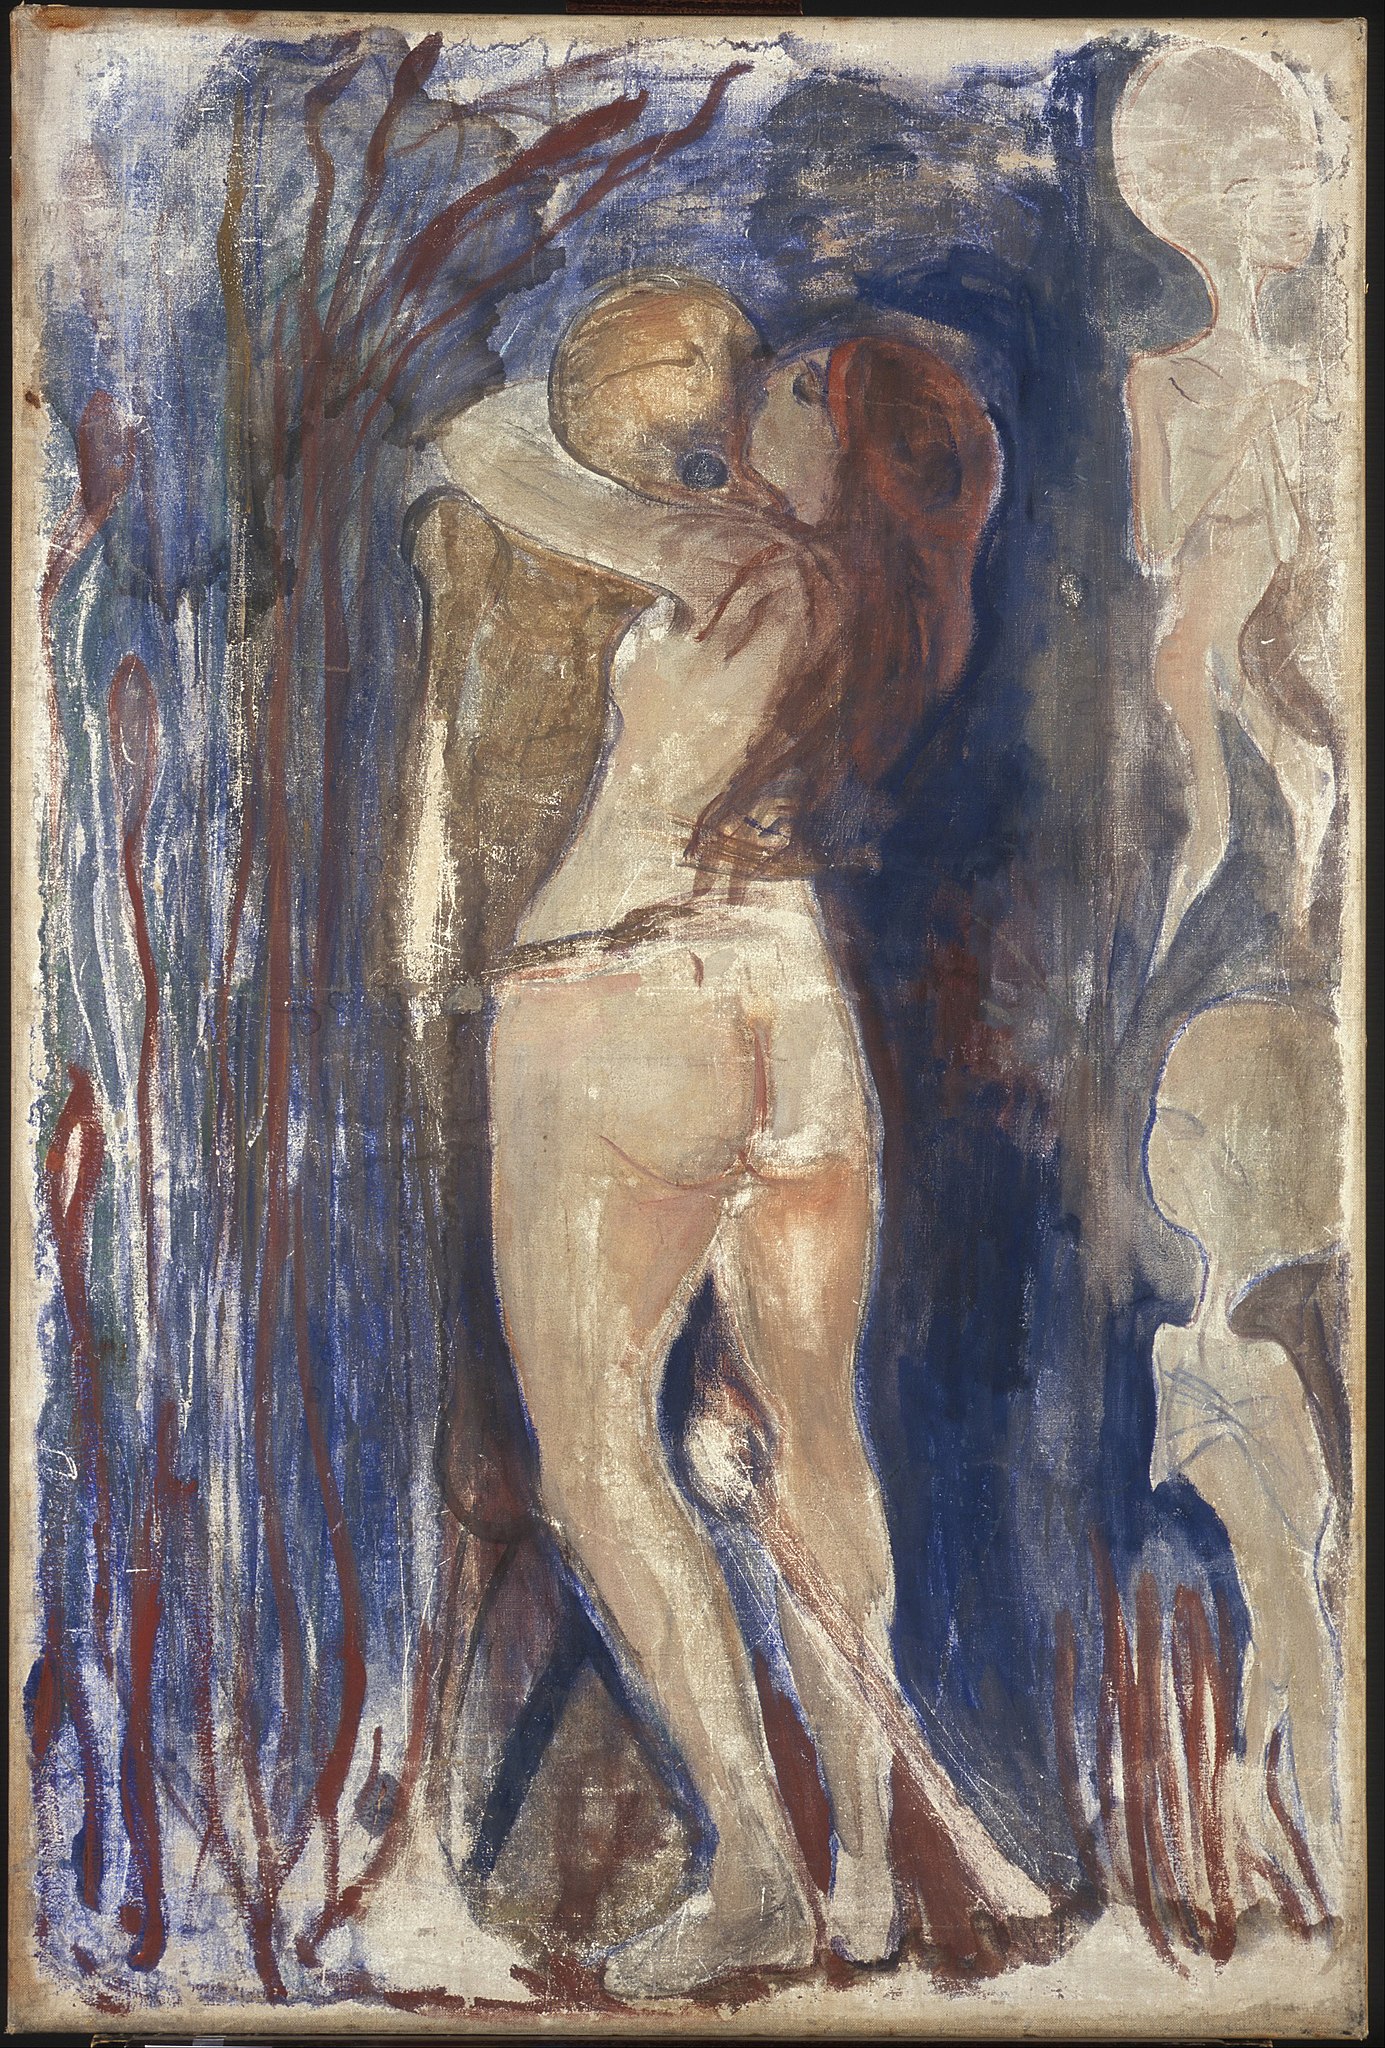 死と生 by Edvard Munch - 1894年 - 86 x 128 cm 